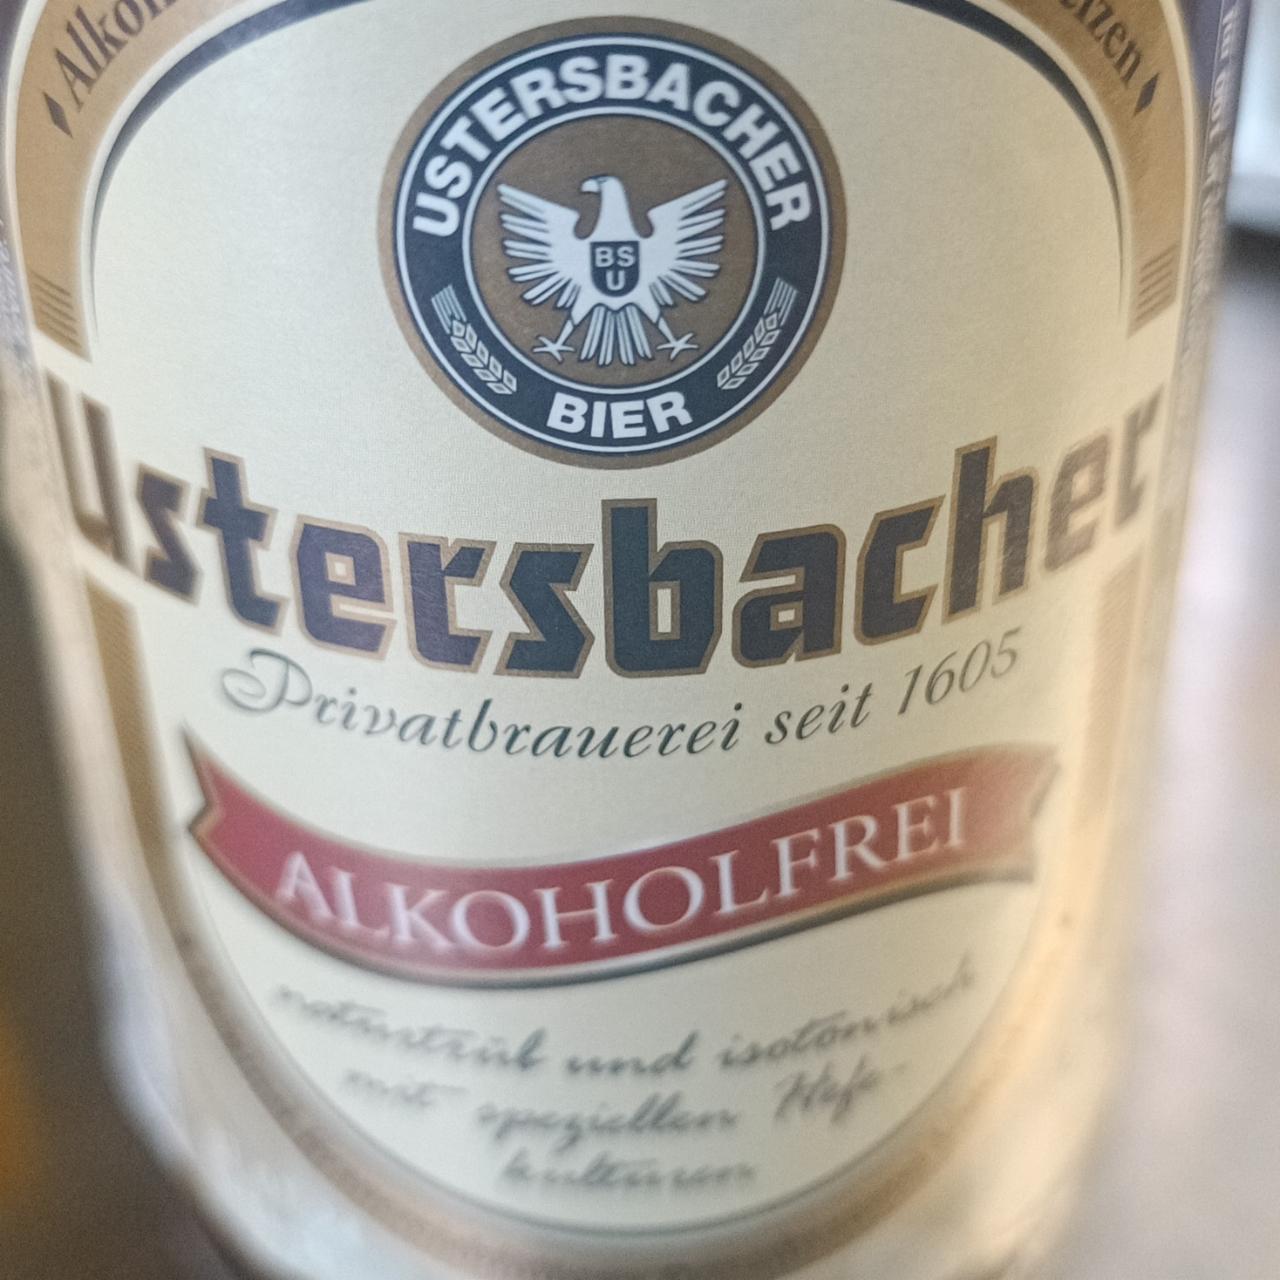 Fotografie - Ustersbacher Bier alkoholfrei